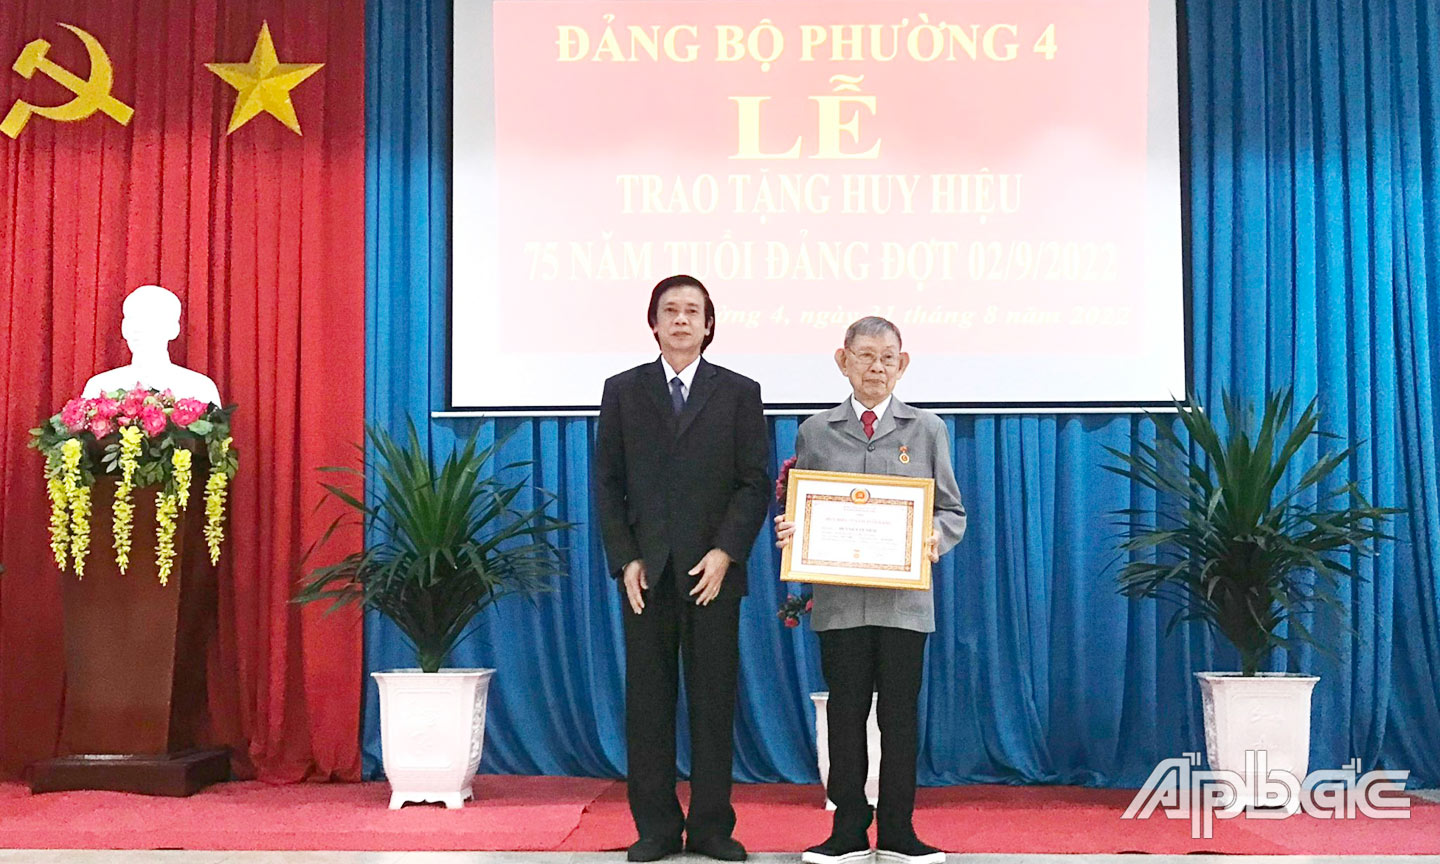 Đồng chí Nguyễn Văn Danh trao Huy hiệu 75 năm tuổi Đảng cho đồng chí Huỳnh Văn Niềm.